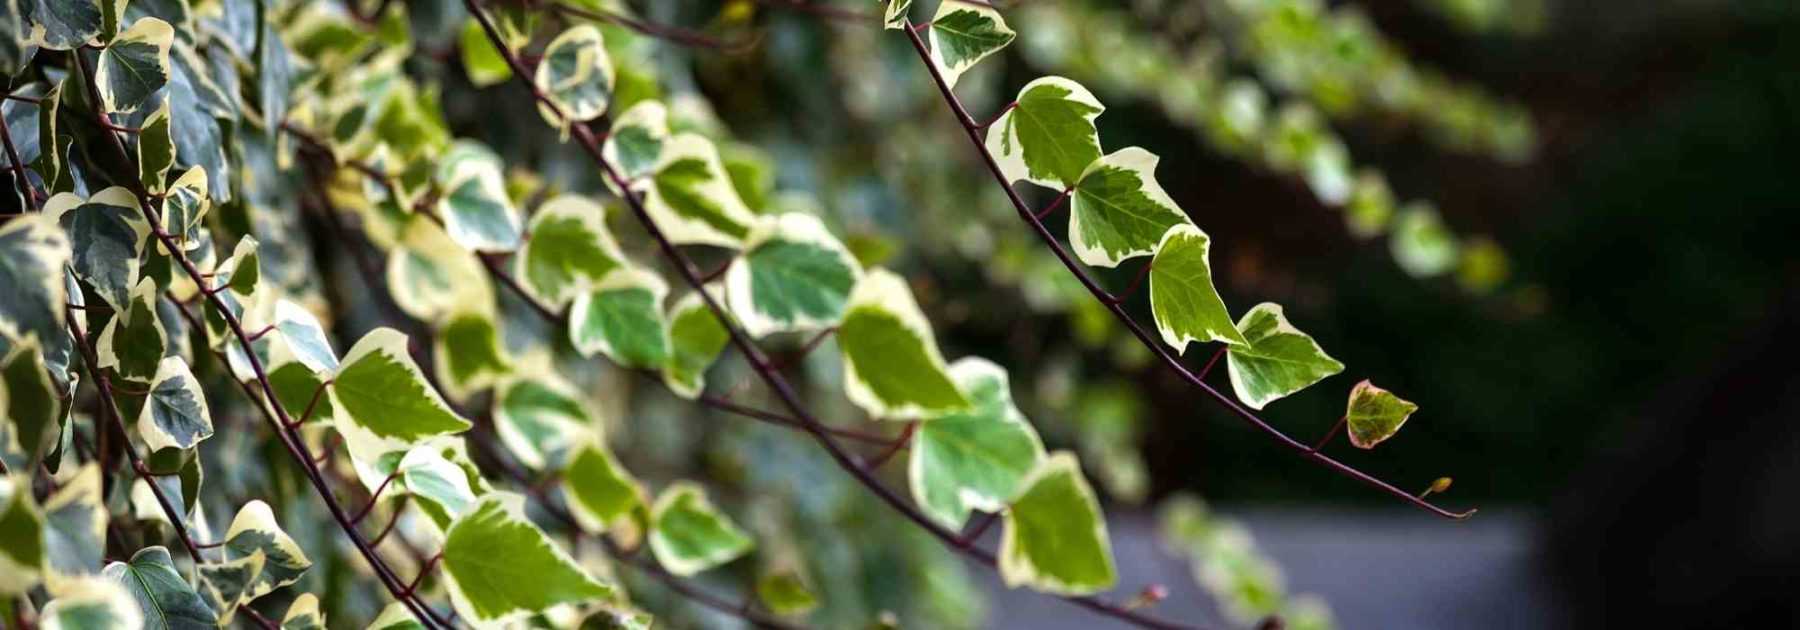 Comment choisir le cache-pot idéal pour sublimer votre plante d'intéri – La  Green Touch